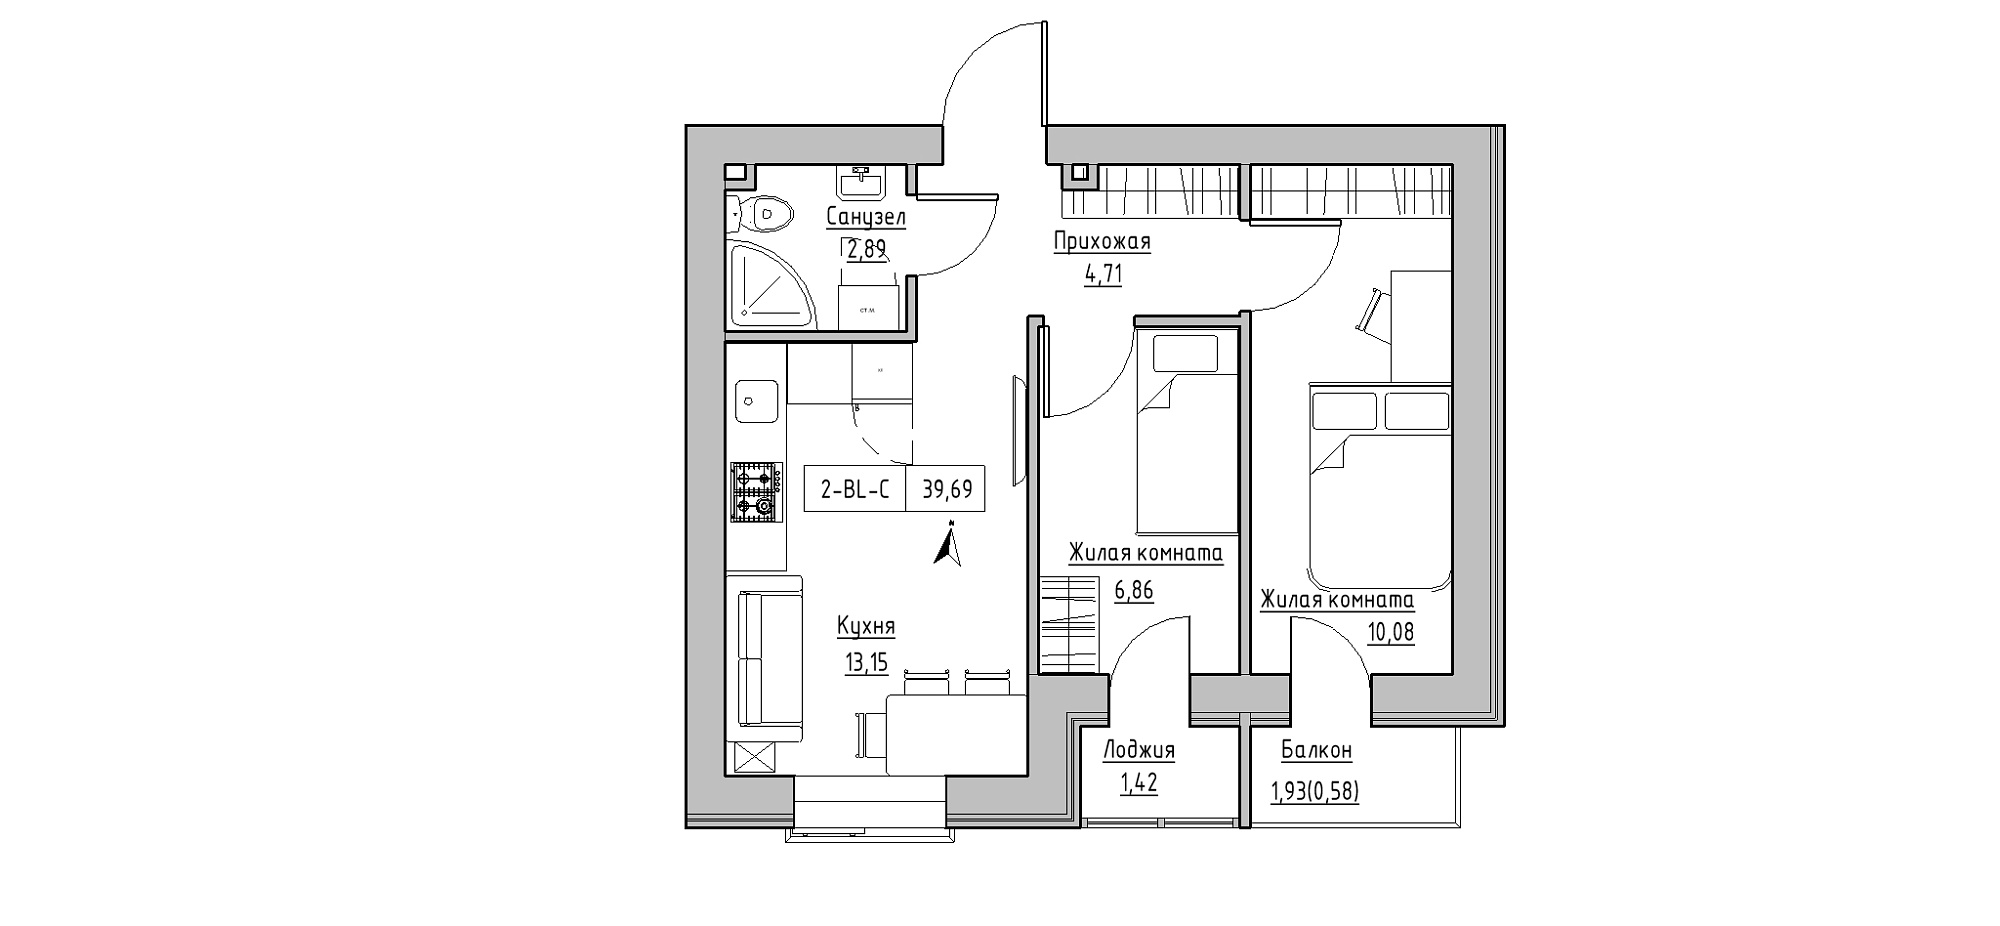 Планировка 2-к квартира площей 39.69м2, KS-020-03/0005.